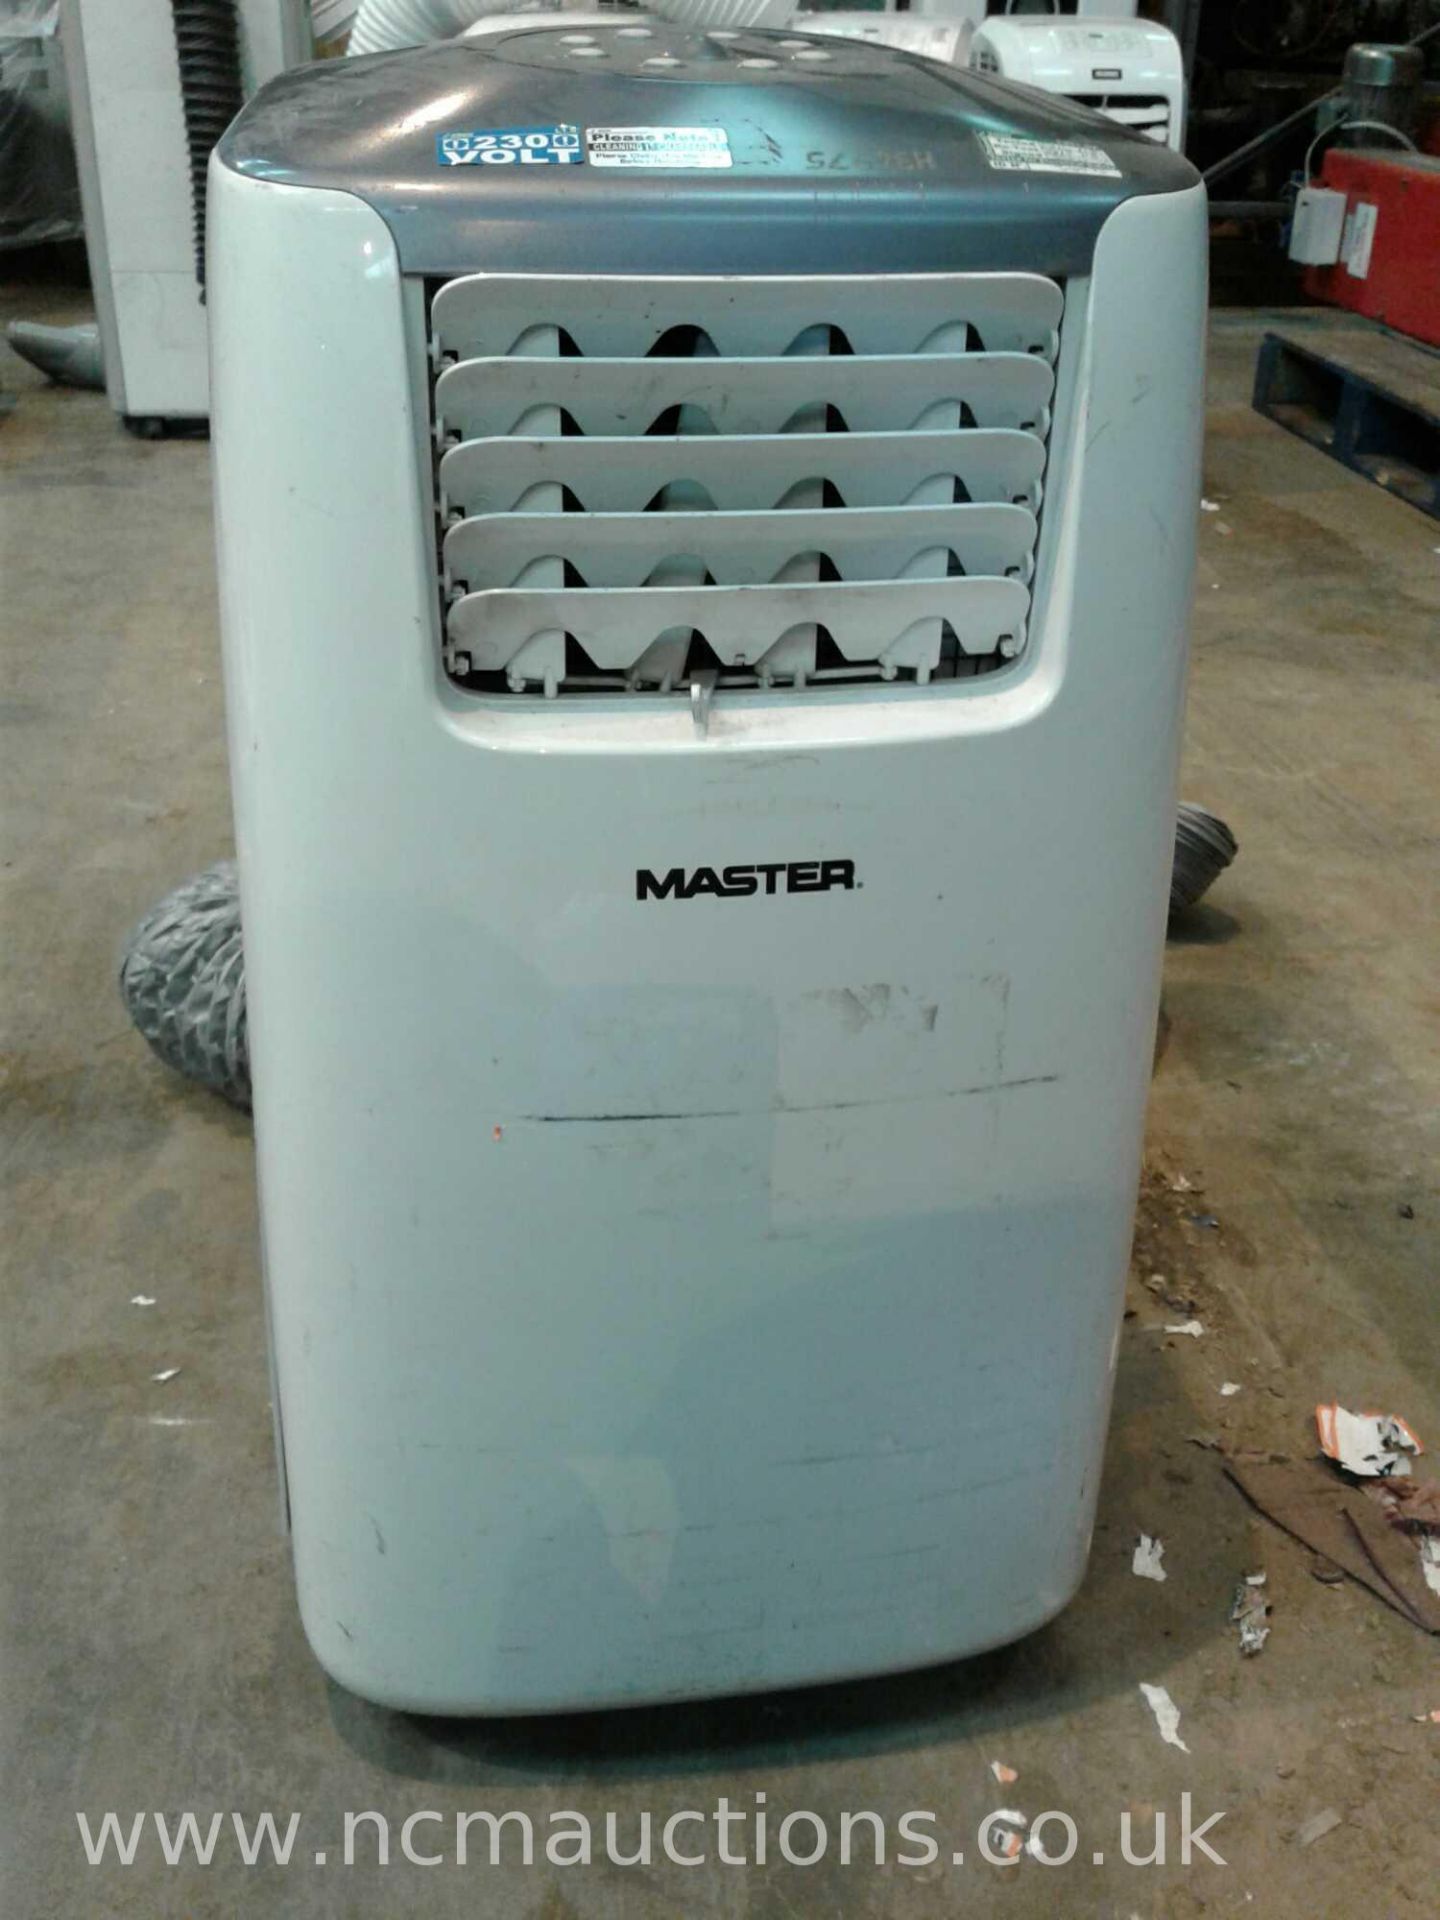 Master air conditioner unit